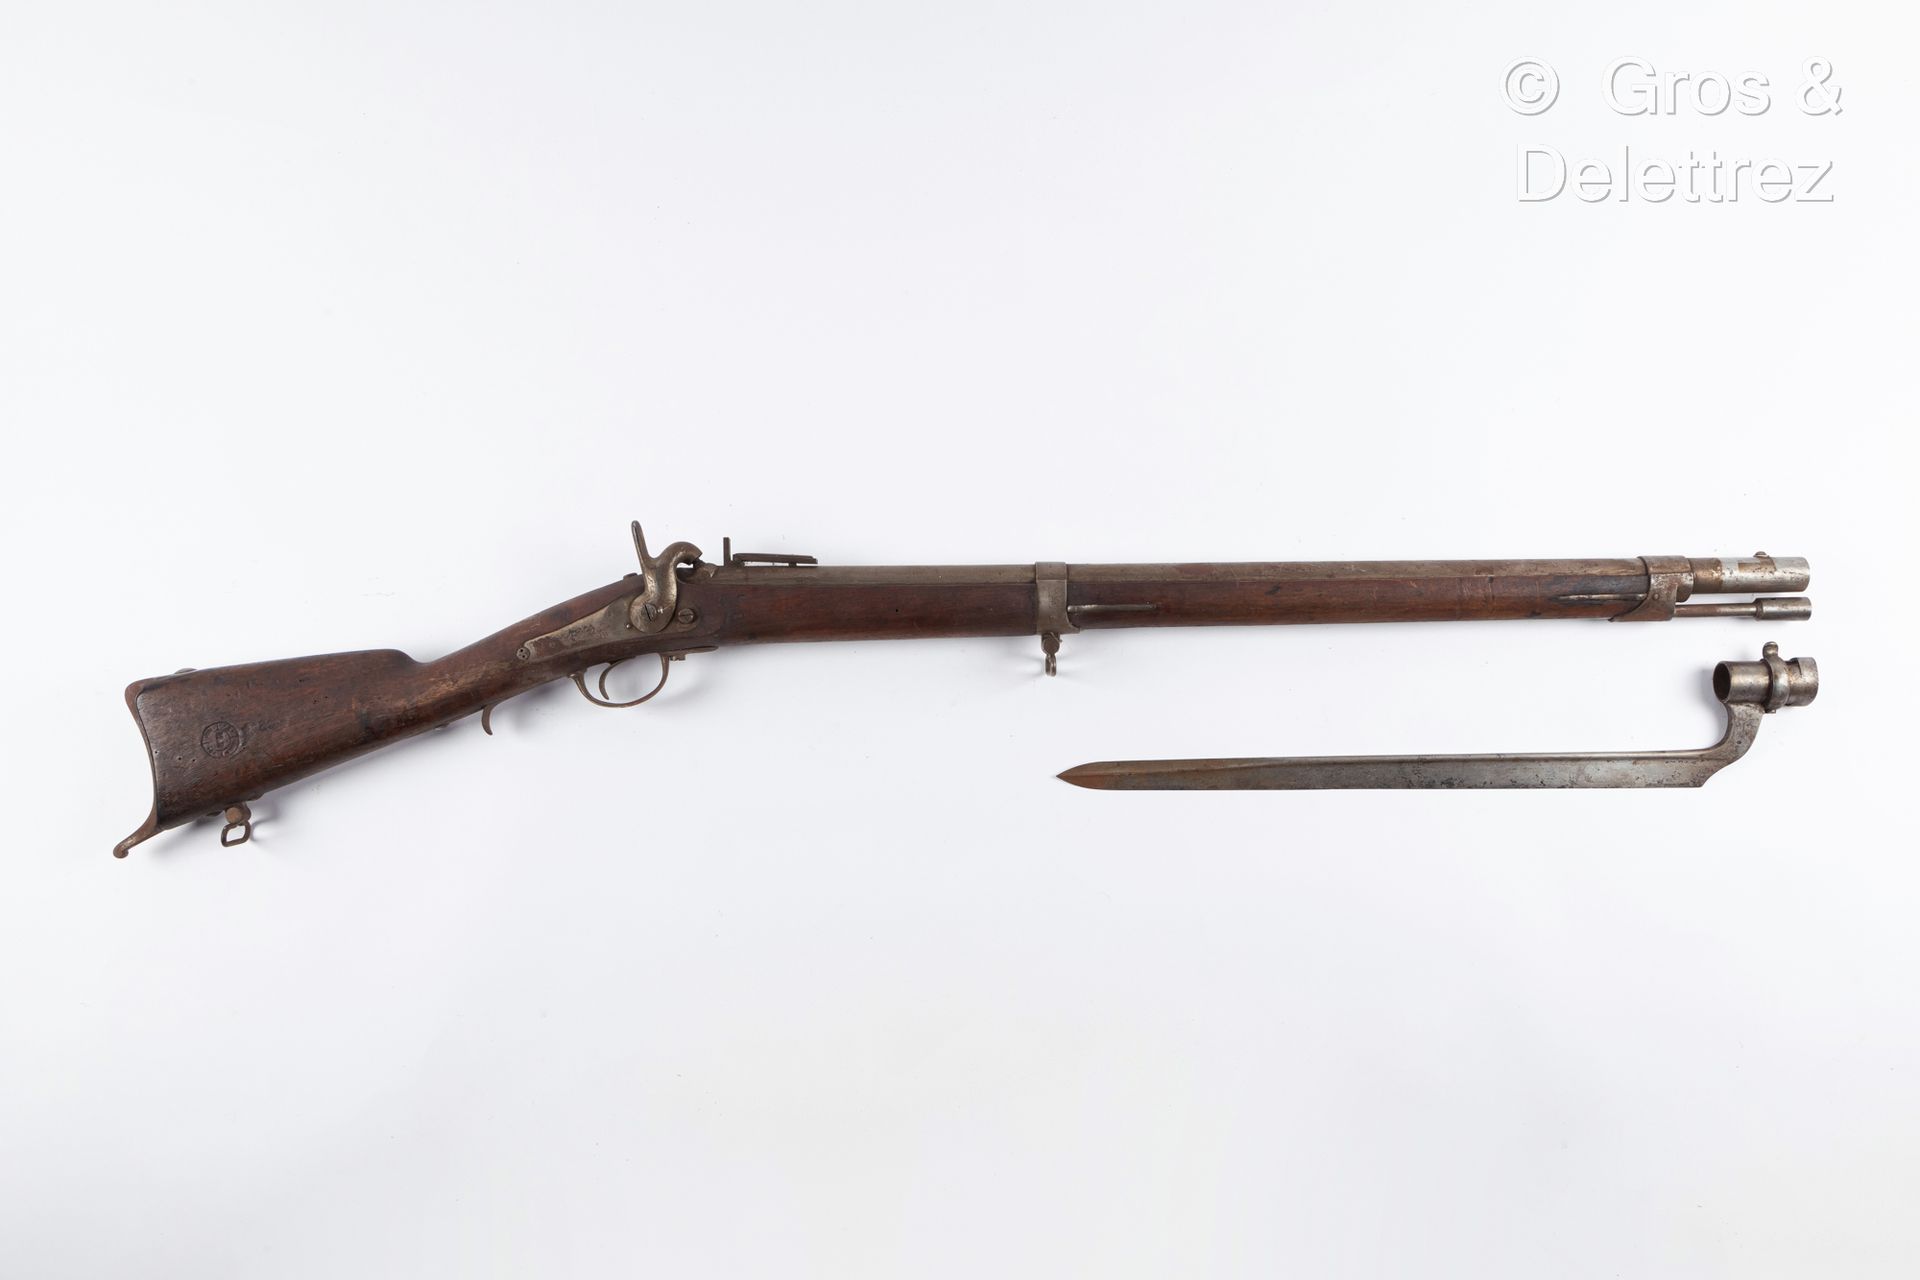 Null 冲击式步枪，日期为1840年；夏特莱罗制造的枪锁；带有一把军刀刺刀。